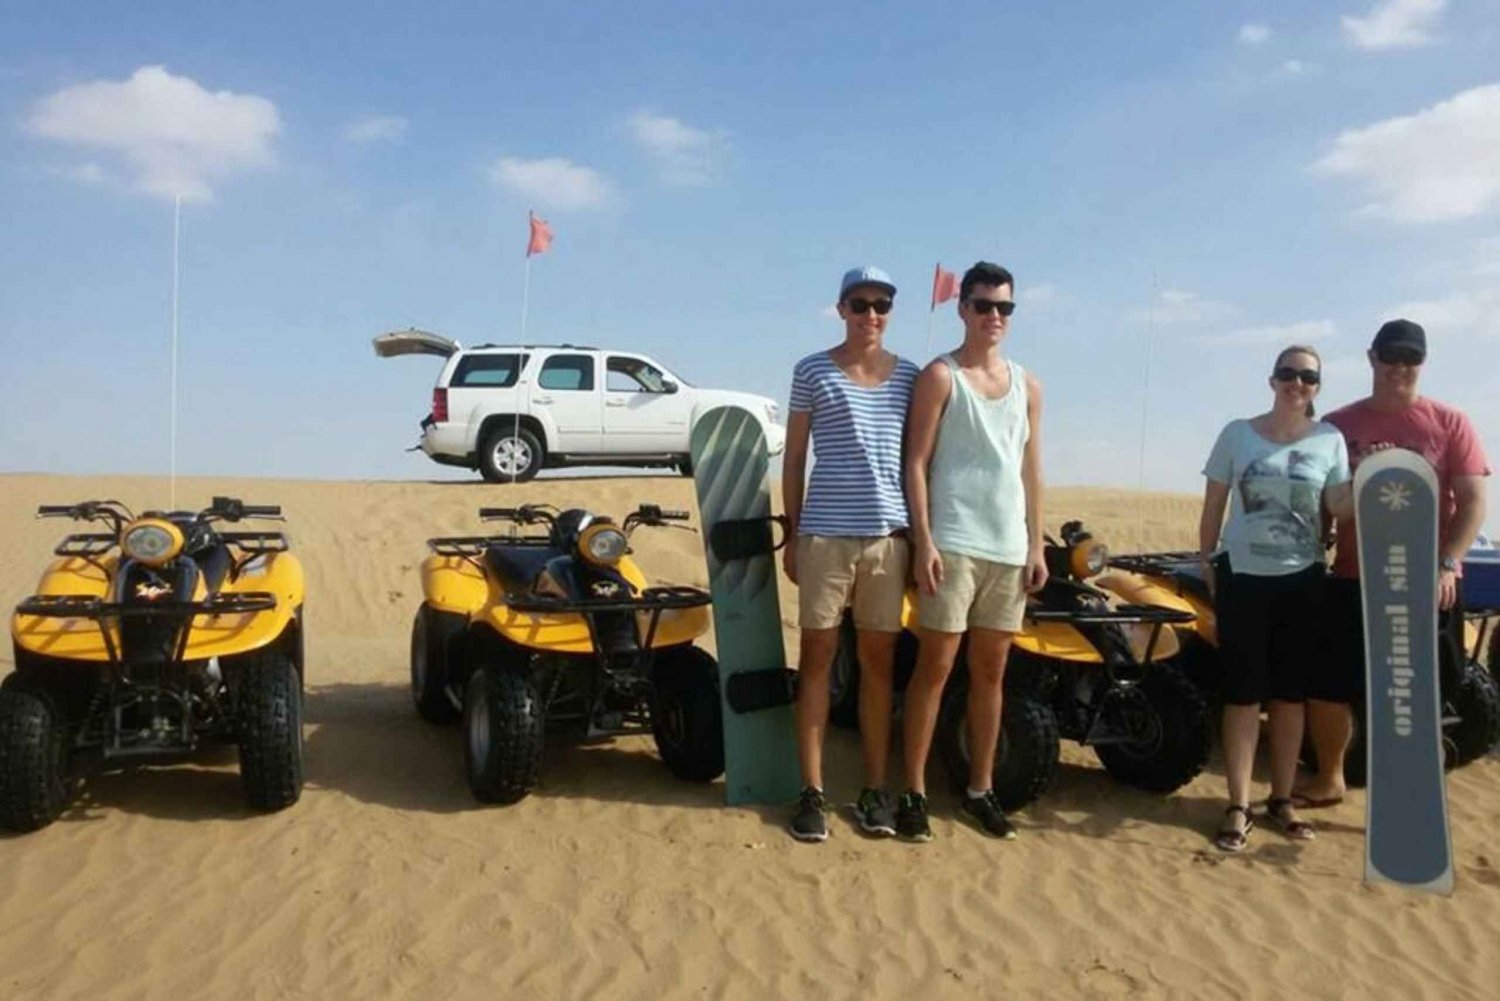 Dubai: quadrijden door de duinen, kamelen en zandboarden